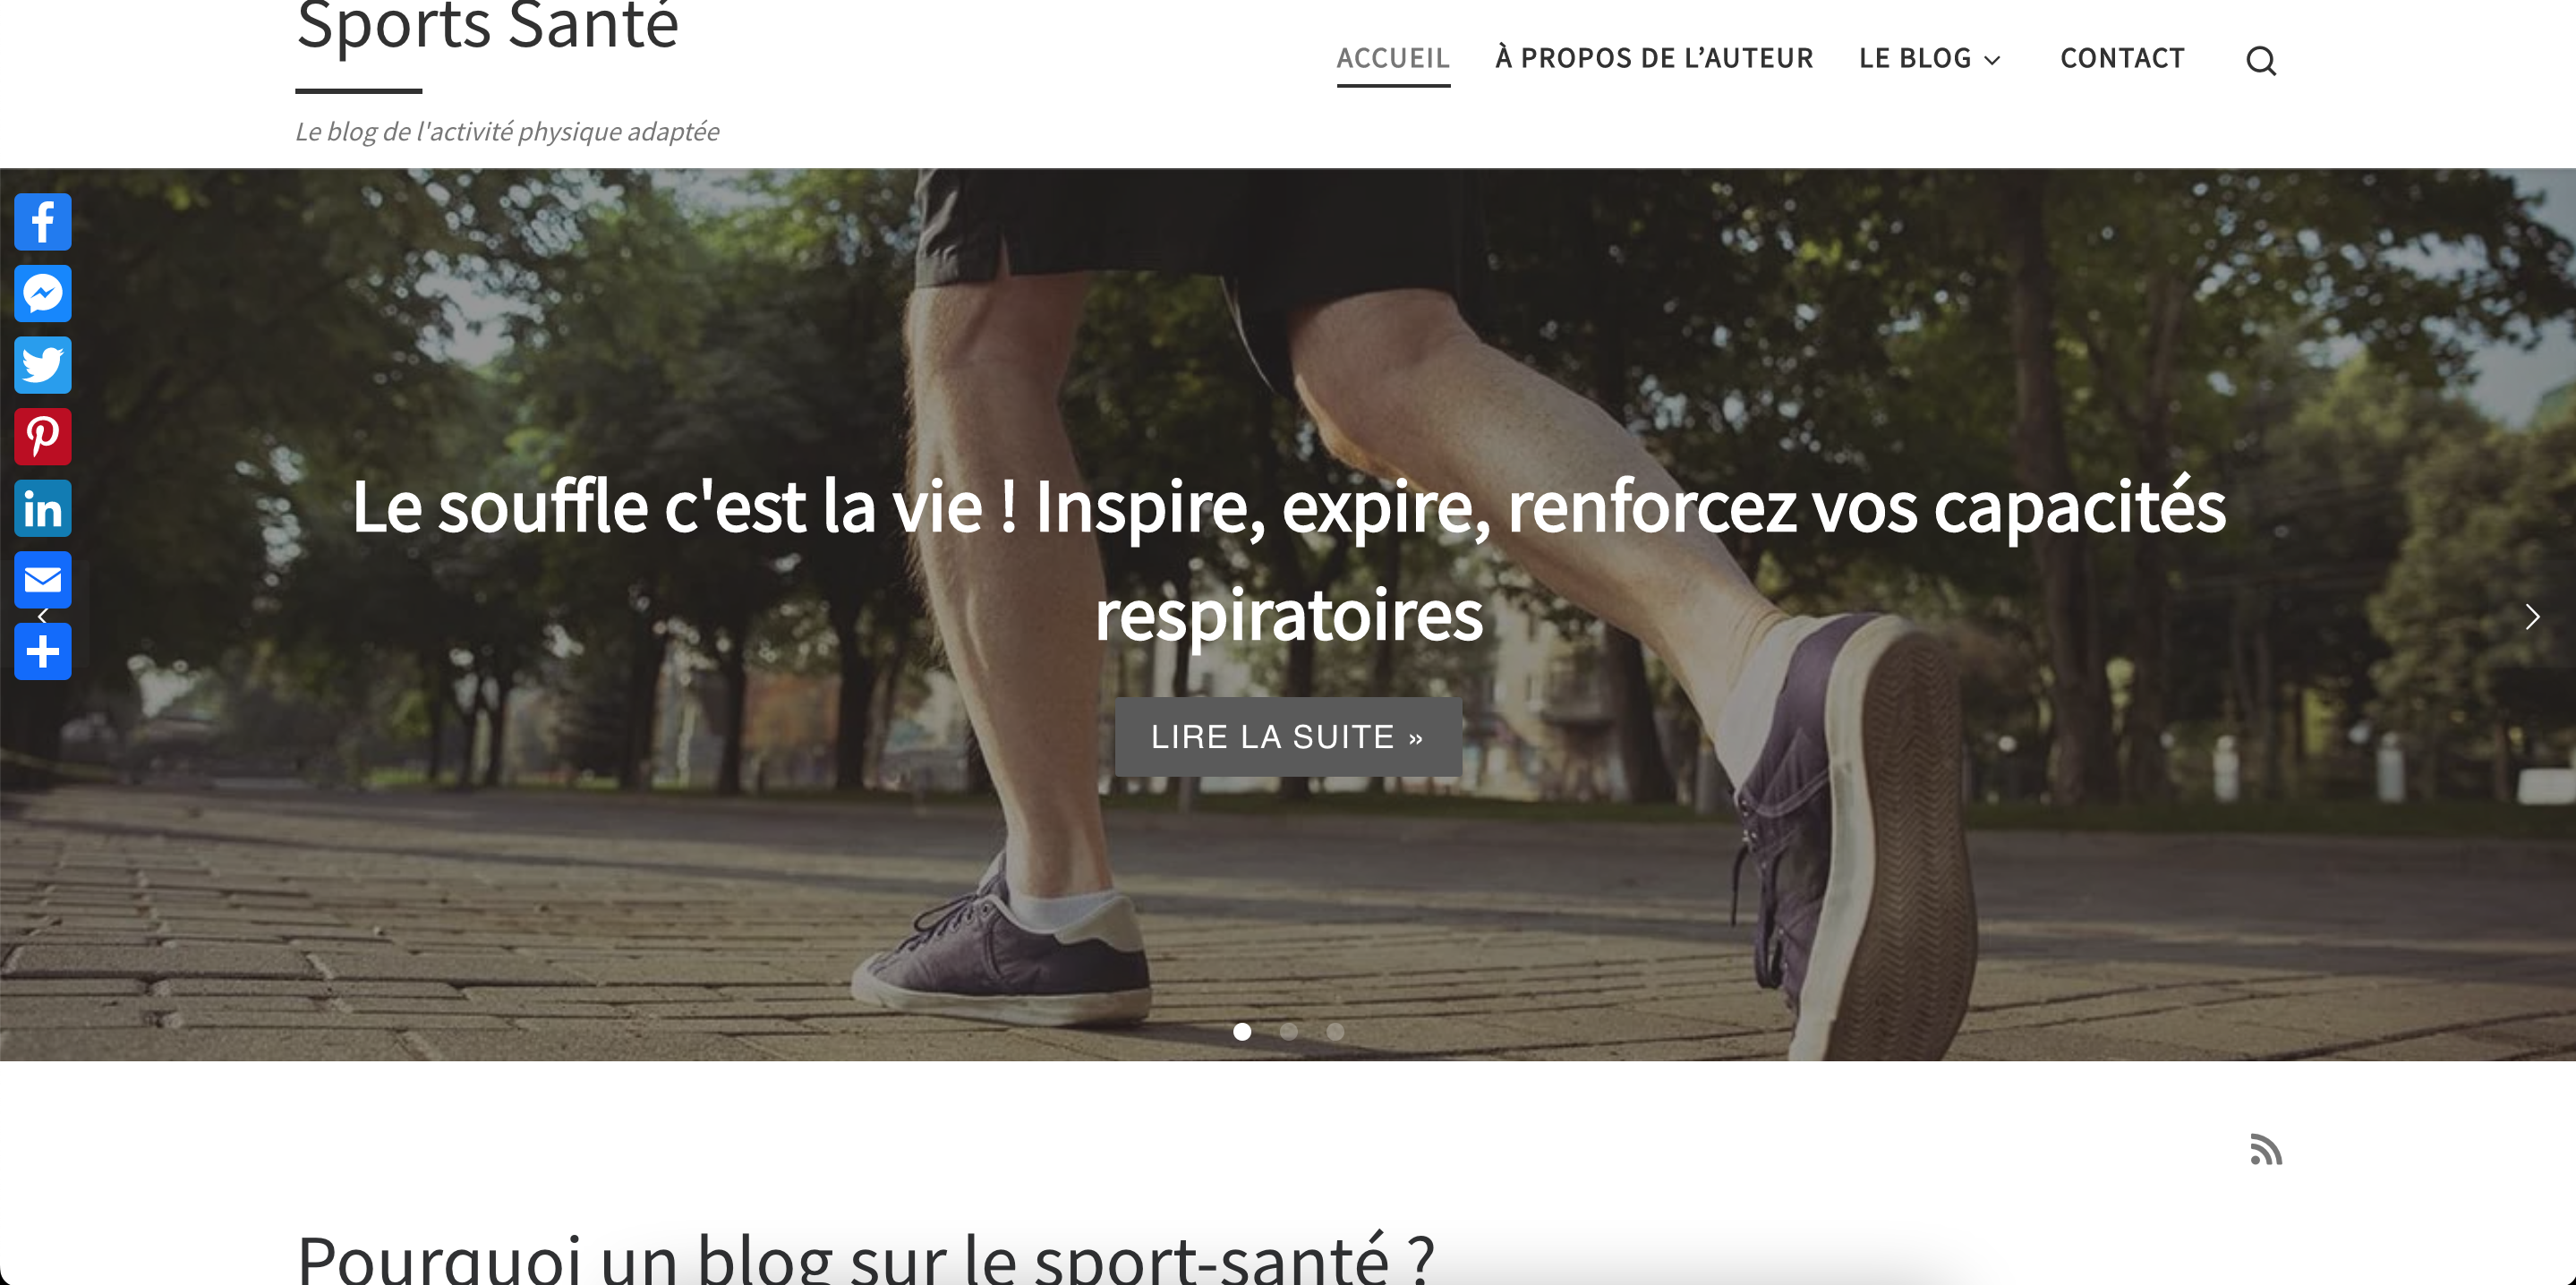 sports-sante.fr, activité physique adaptée